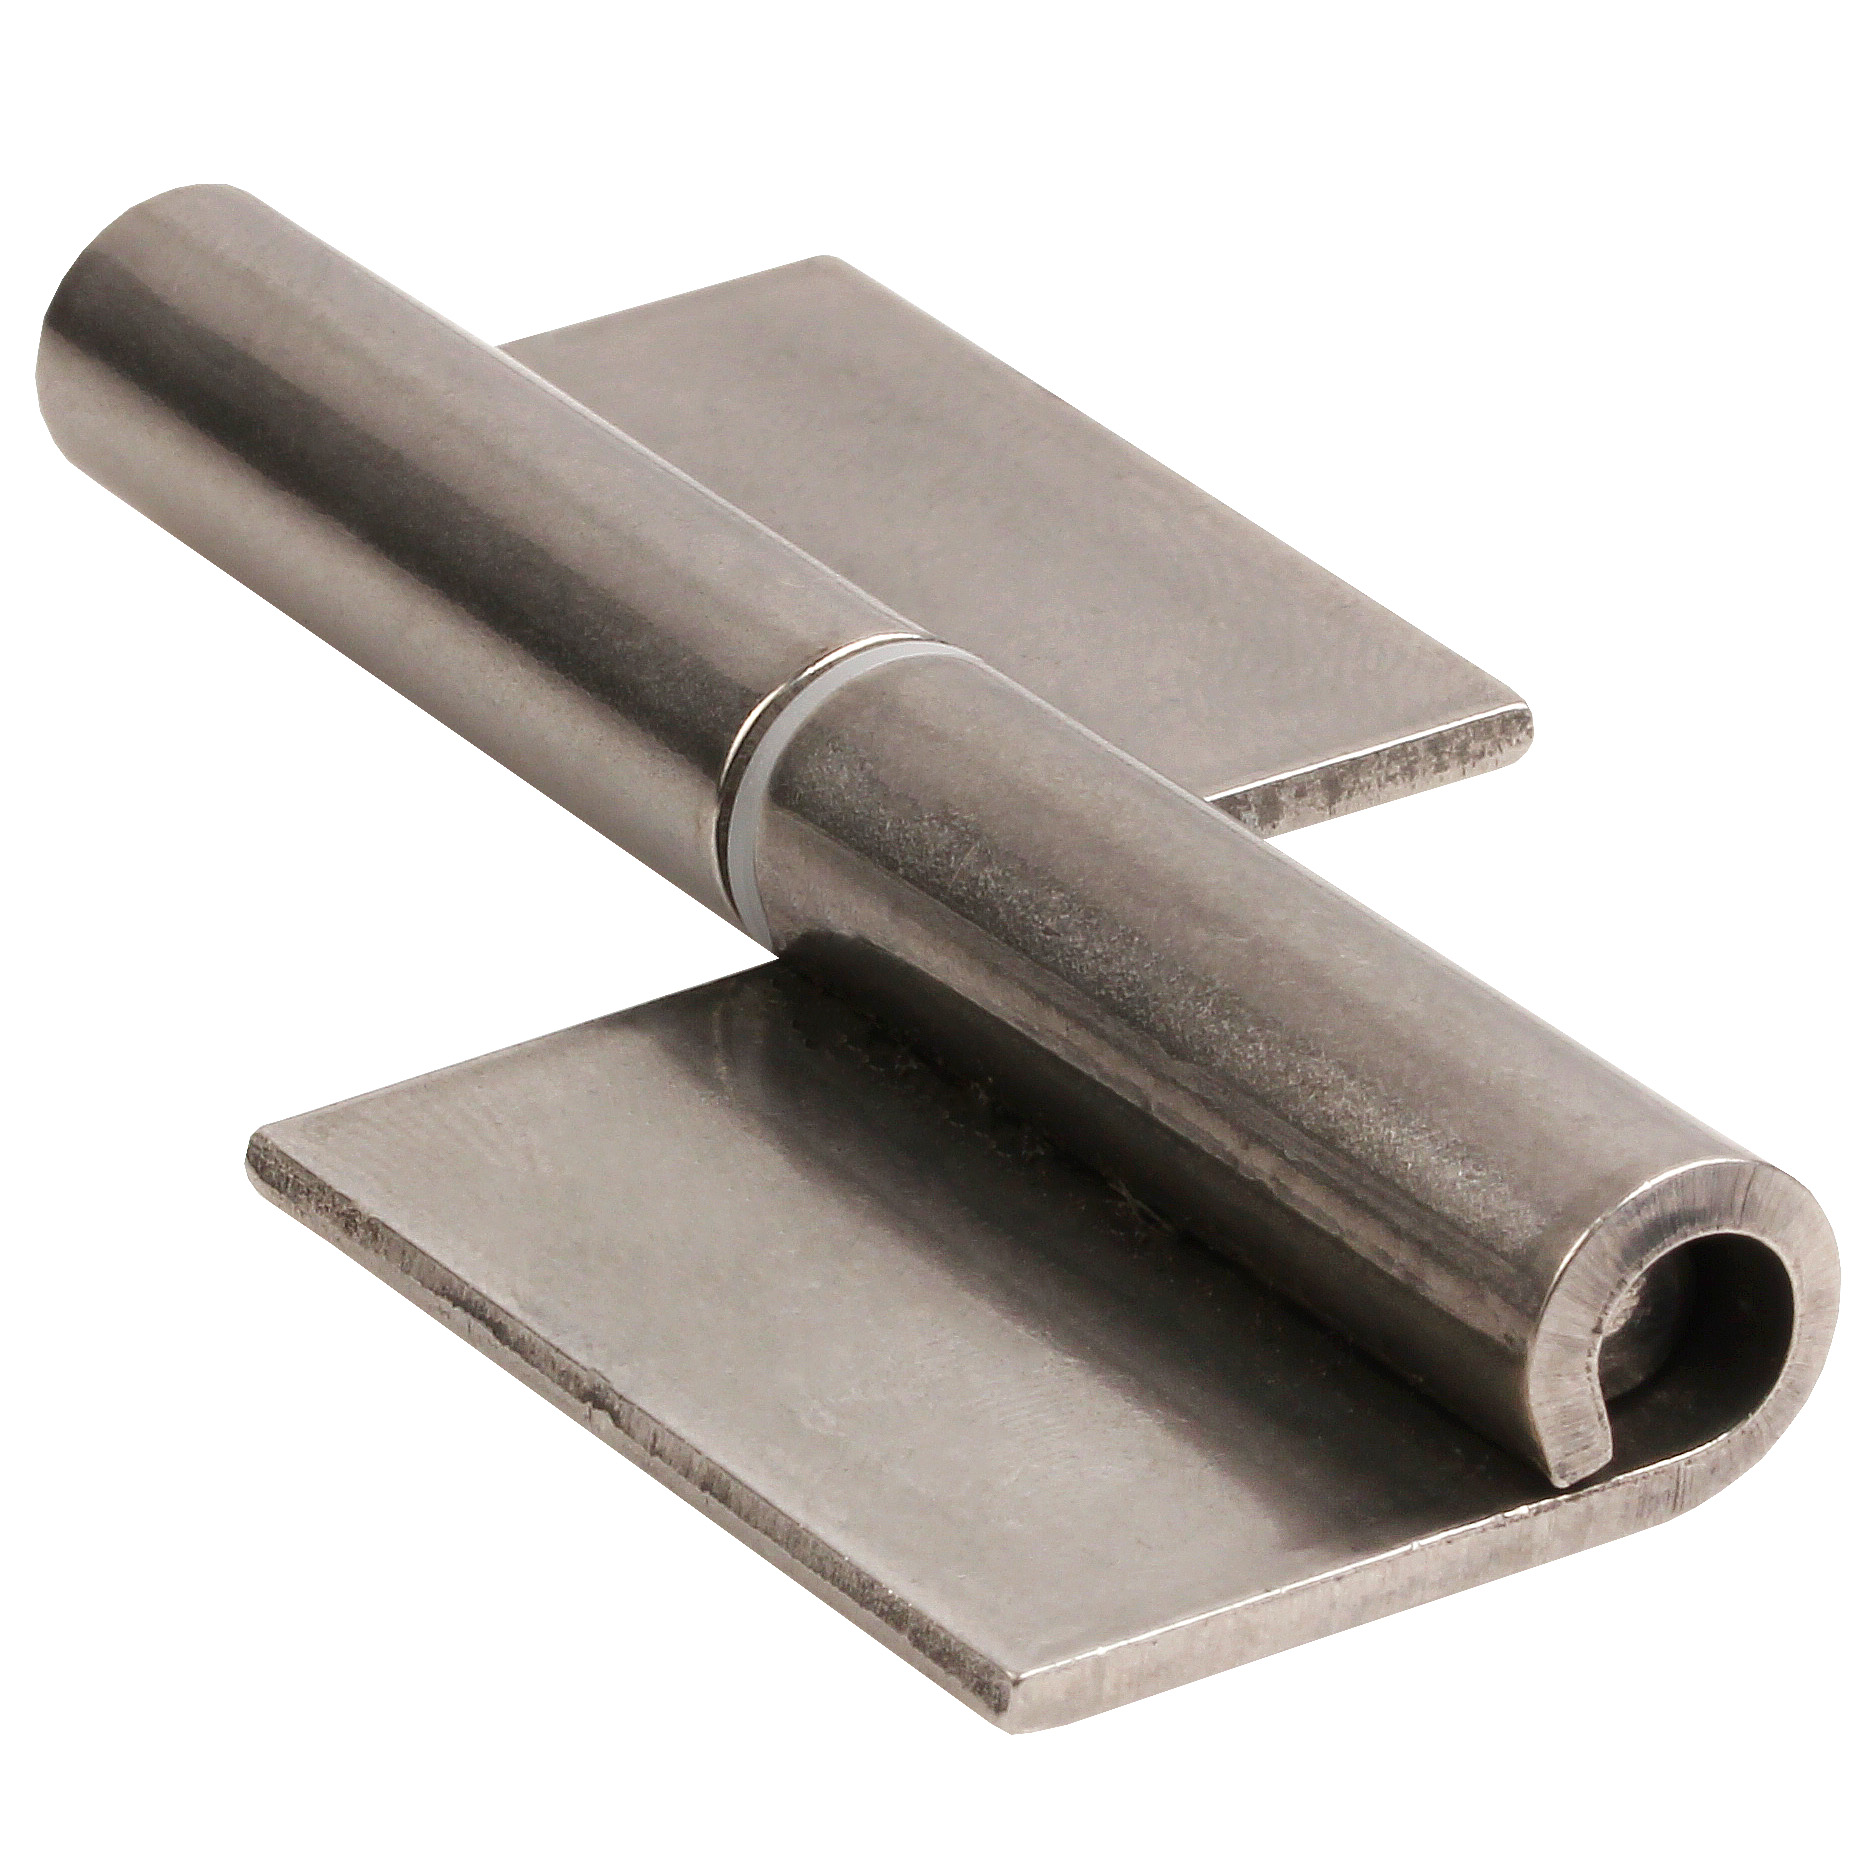 Stainless steel garnet hinge - To be welded - Garnet - Offset